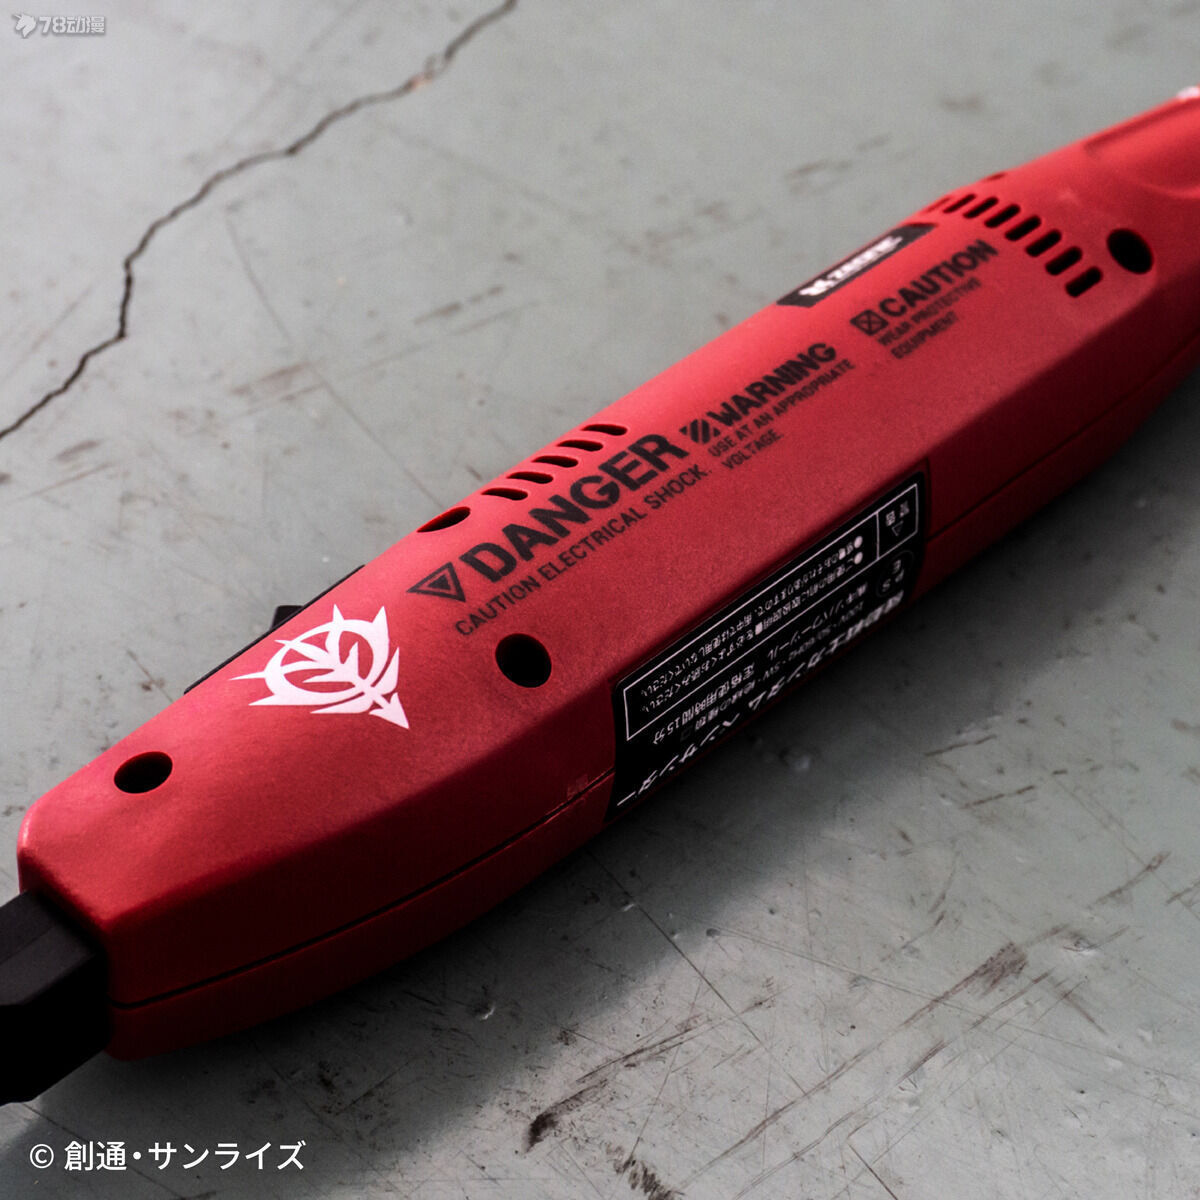 PB網限 機動戰士高達 筆型電動打磨機 夏亞專用色 10890日元